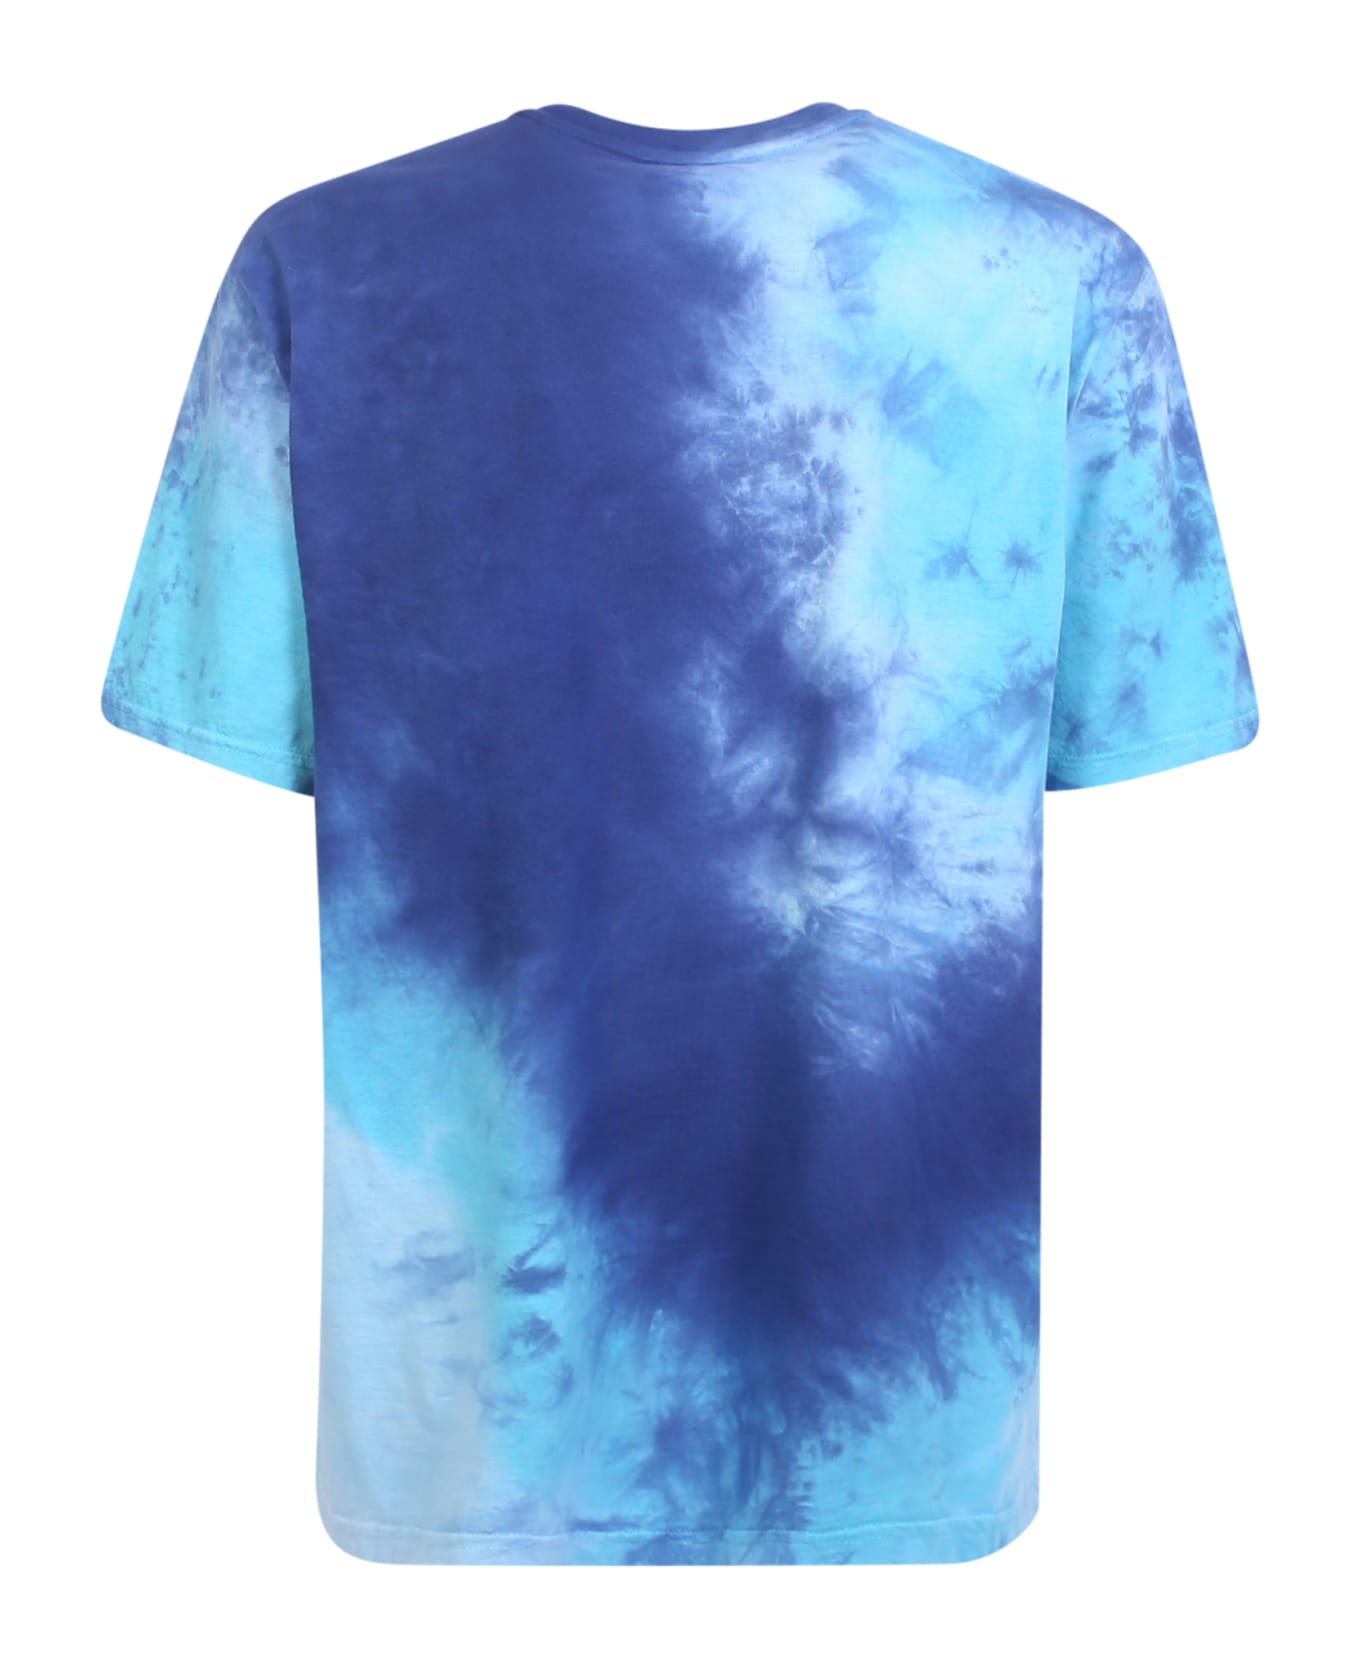 Mauna Kea Blue Tie Dye T-shirt - Multi